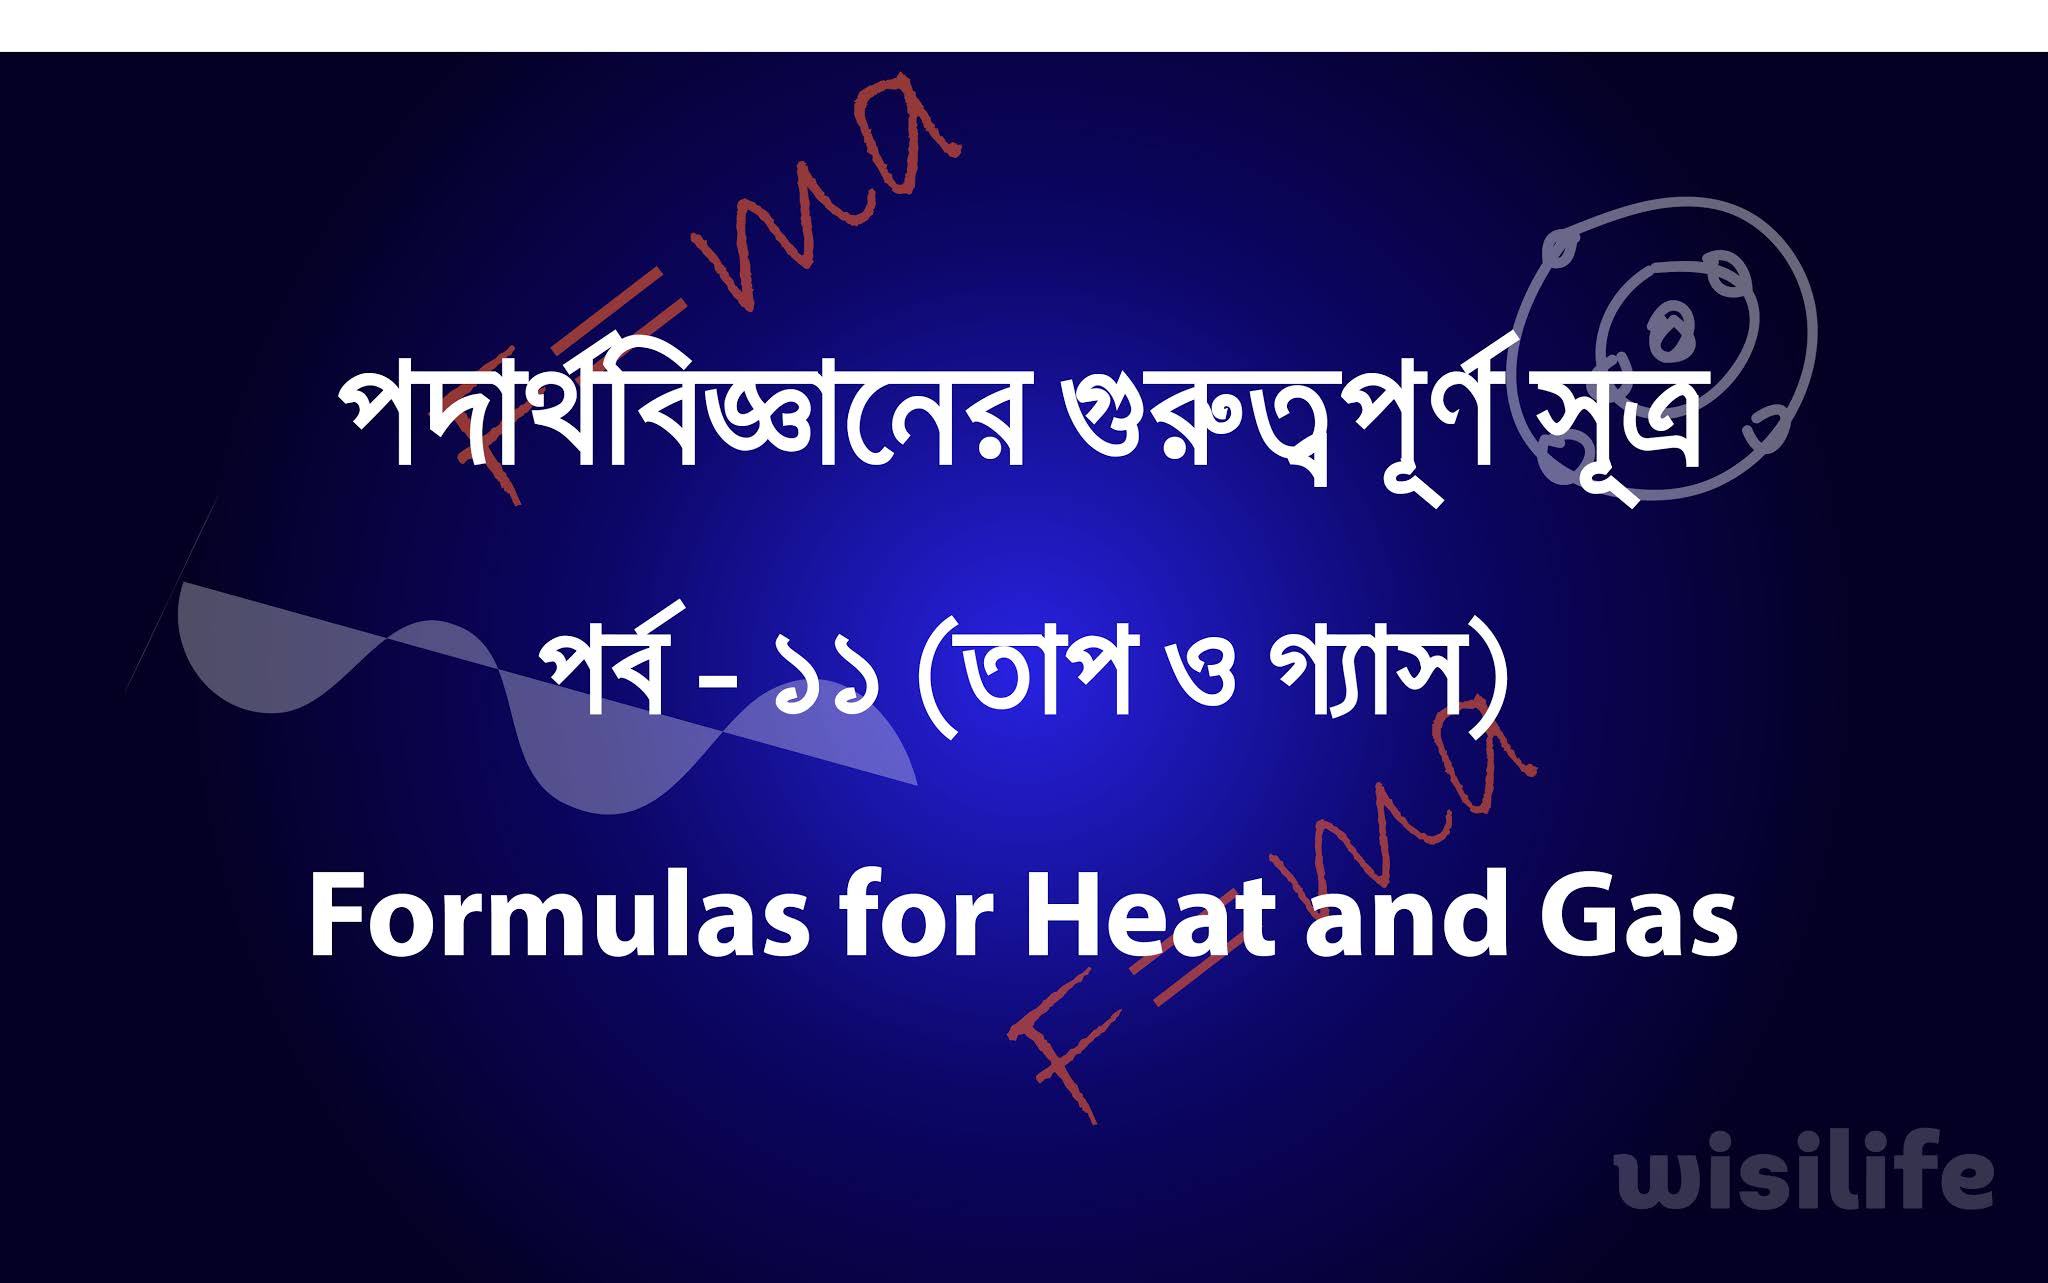 পদার্থবিজ্ঞানের সূত্র । পর্ব- ১১ (তাপ ও গ্যাস)। Formulas for Heat And Gas